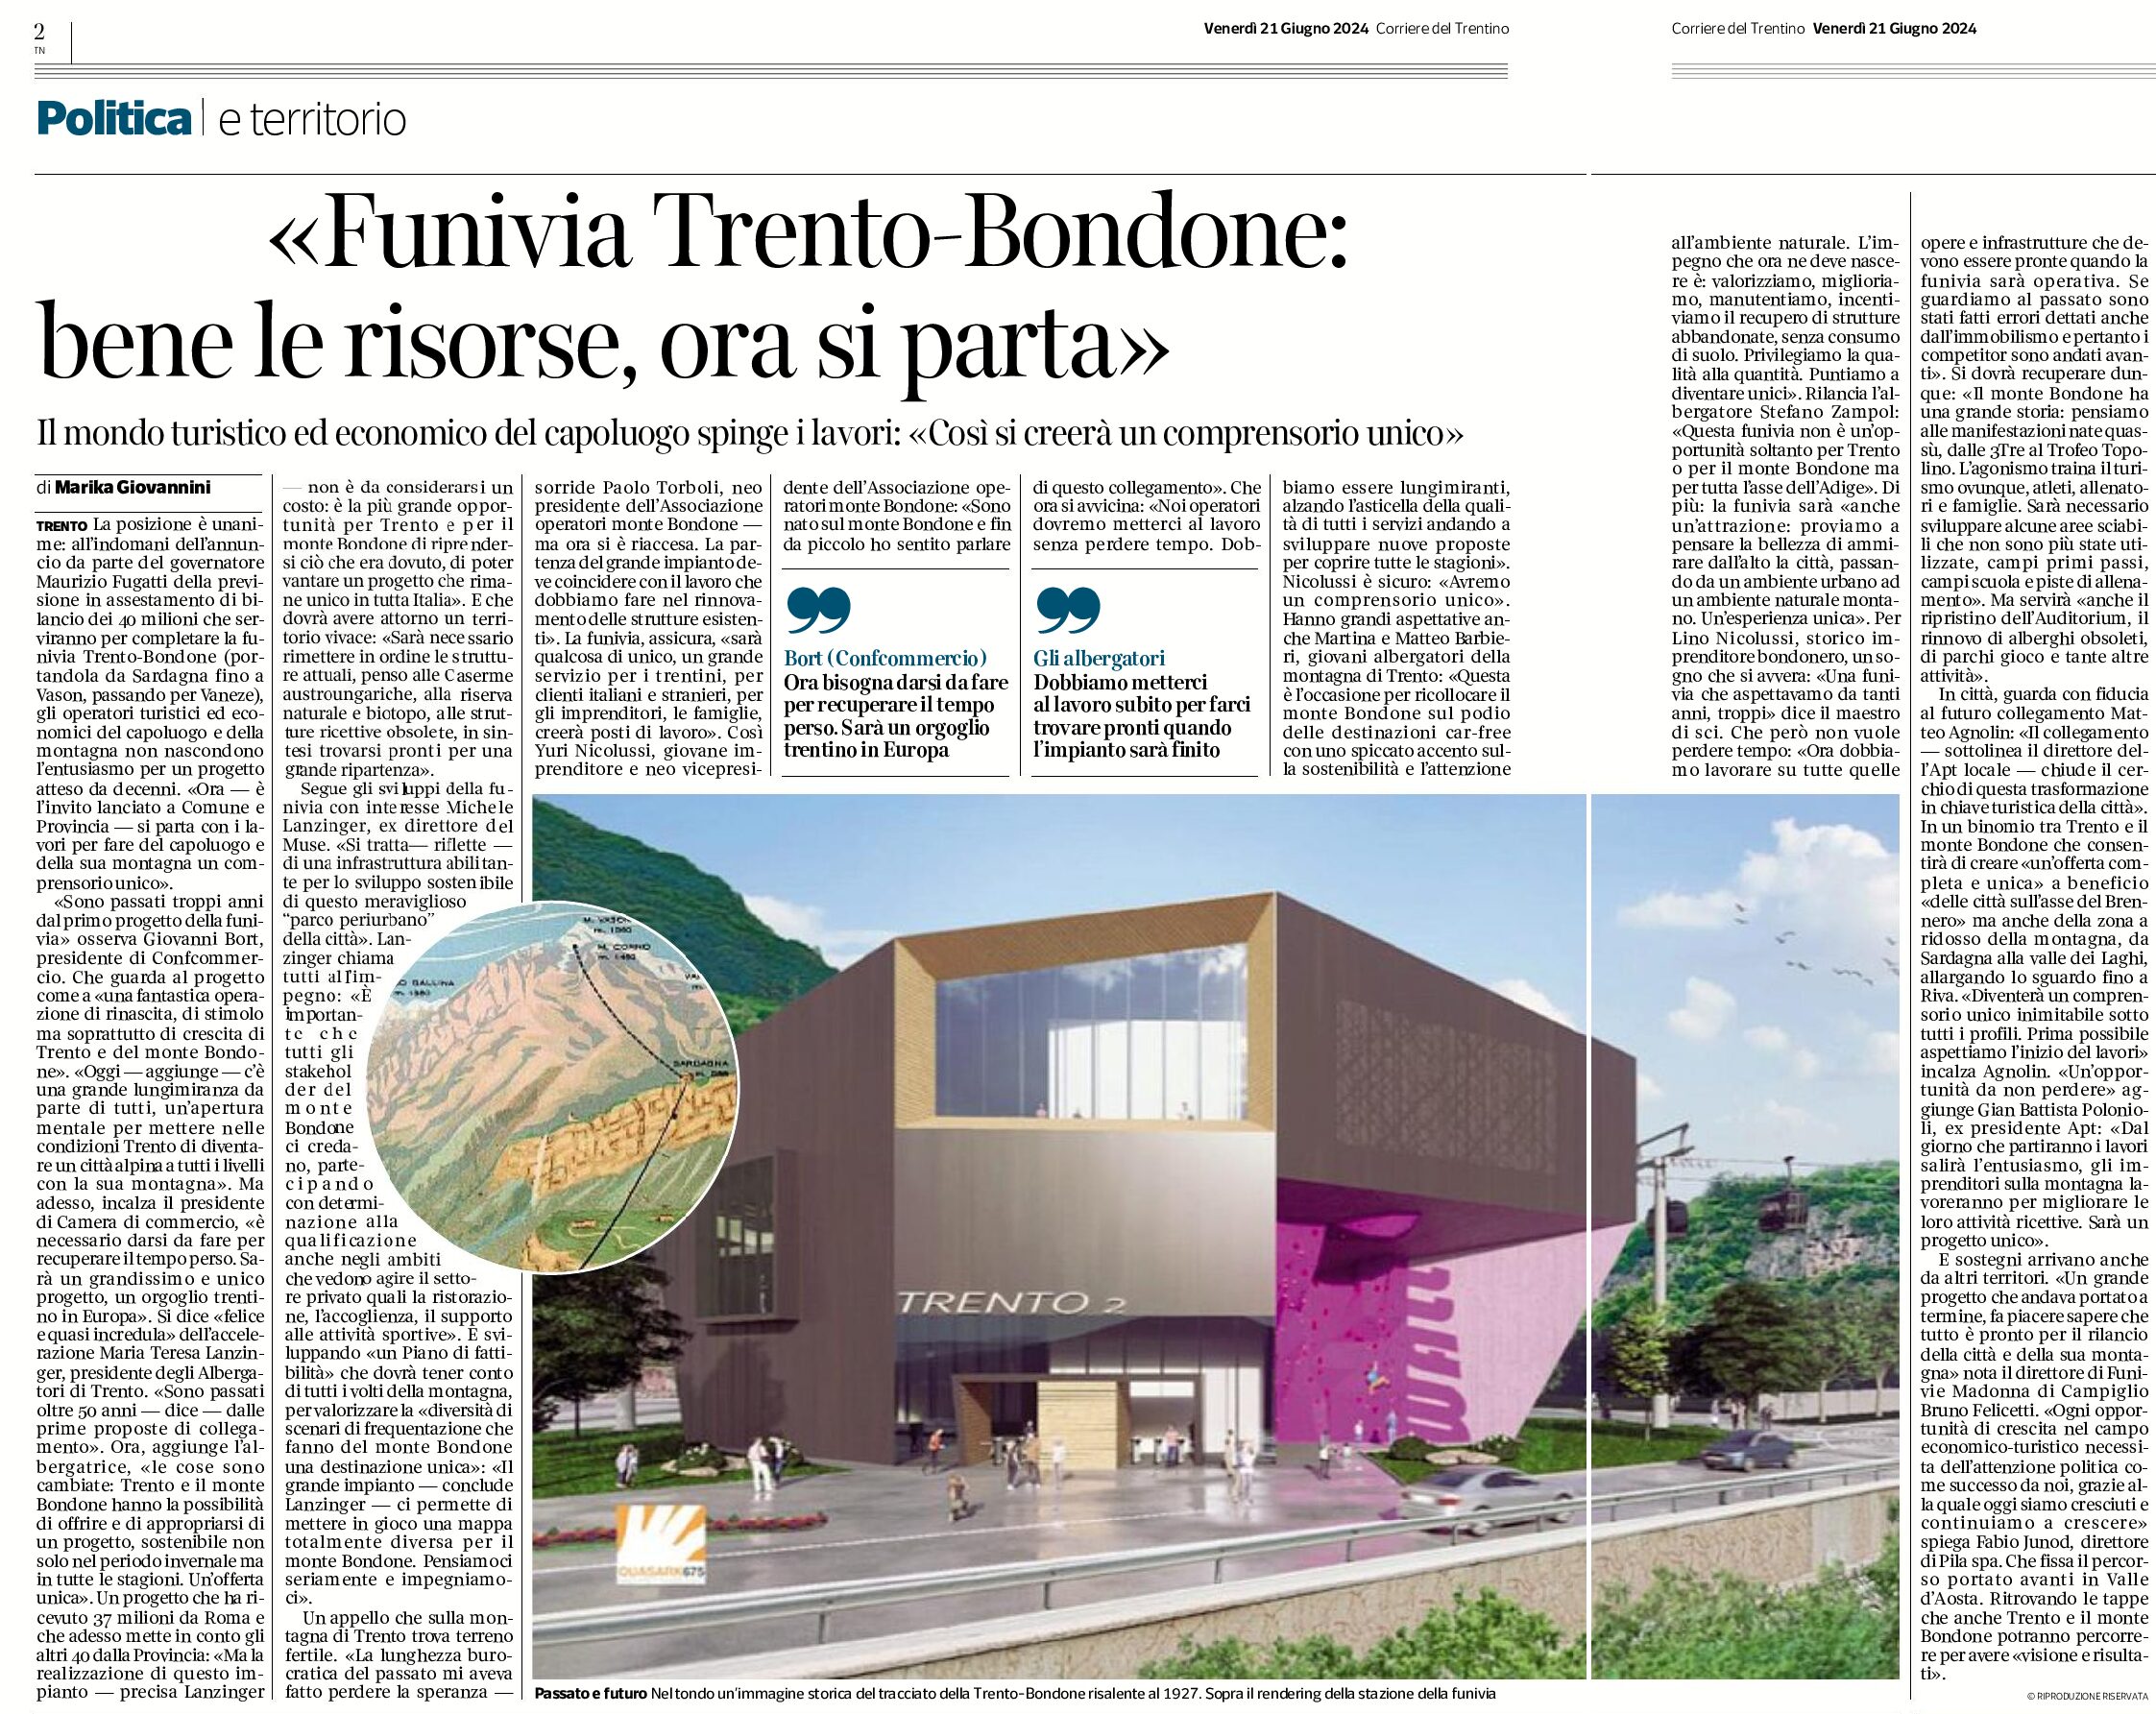 Funivia Trento-Bondone: bene le risorse, ora si parta